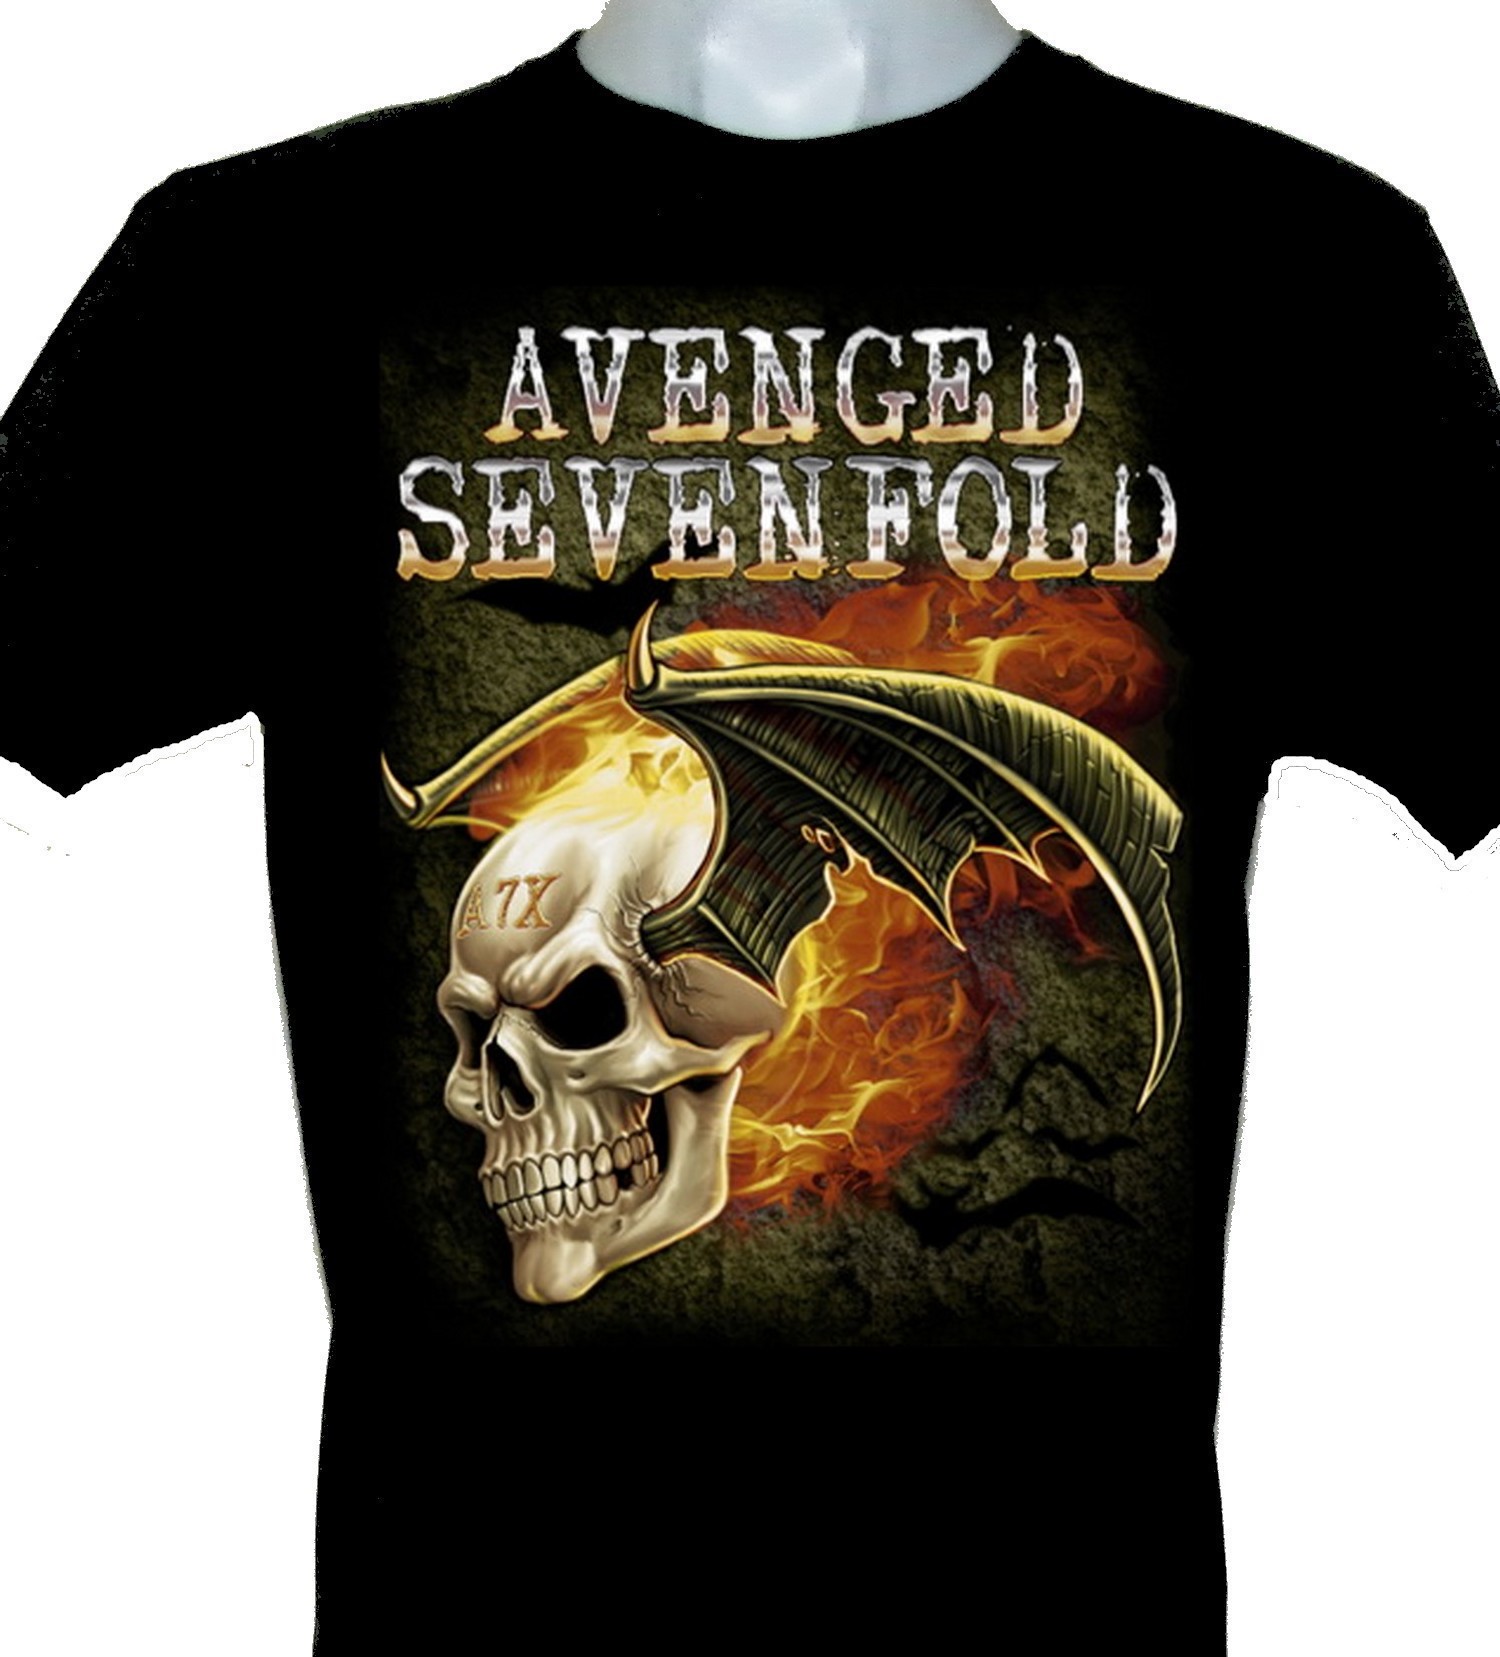 at donere Konflikt leder Avenged Sevenfold t-shirt size S – RoxxBKK